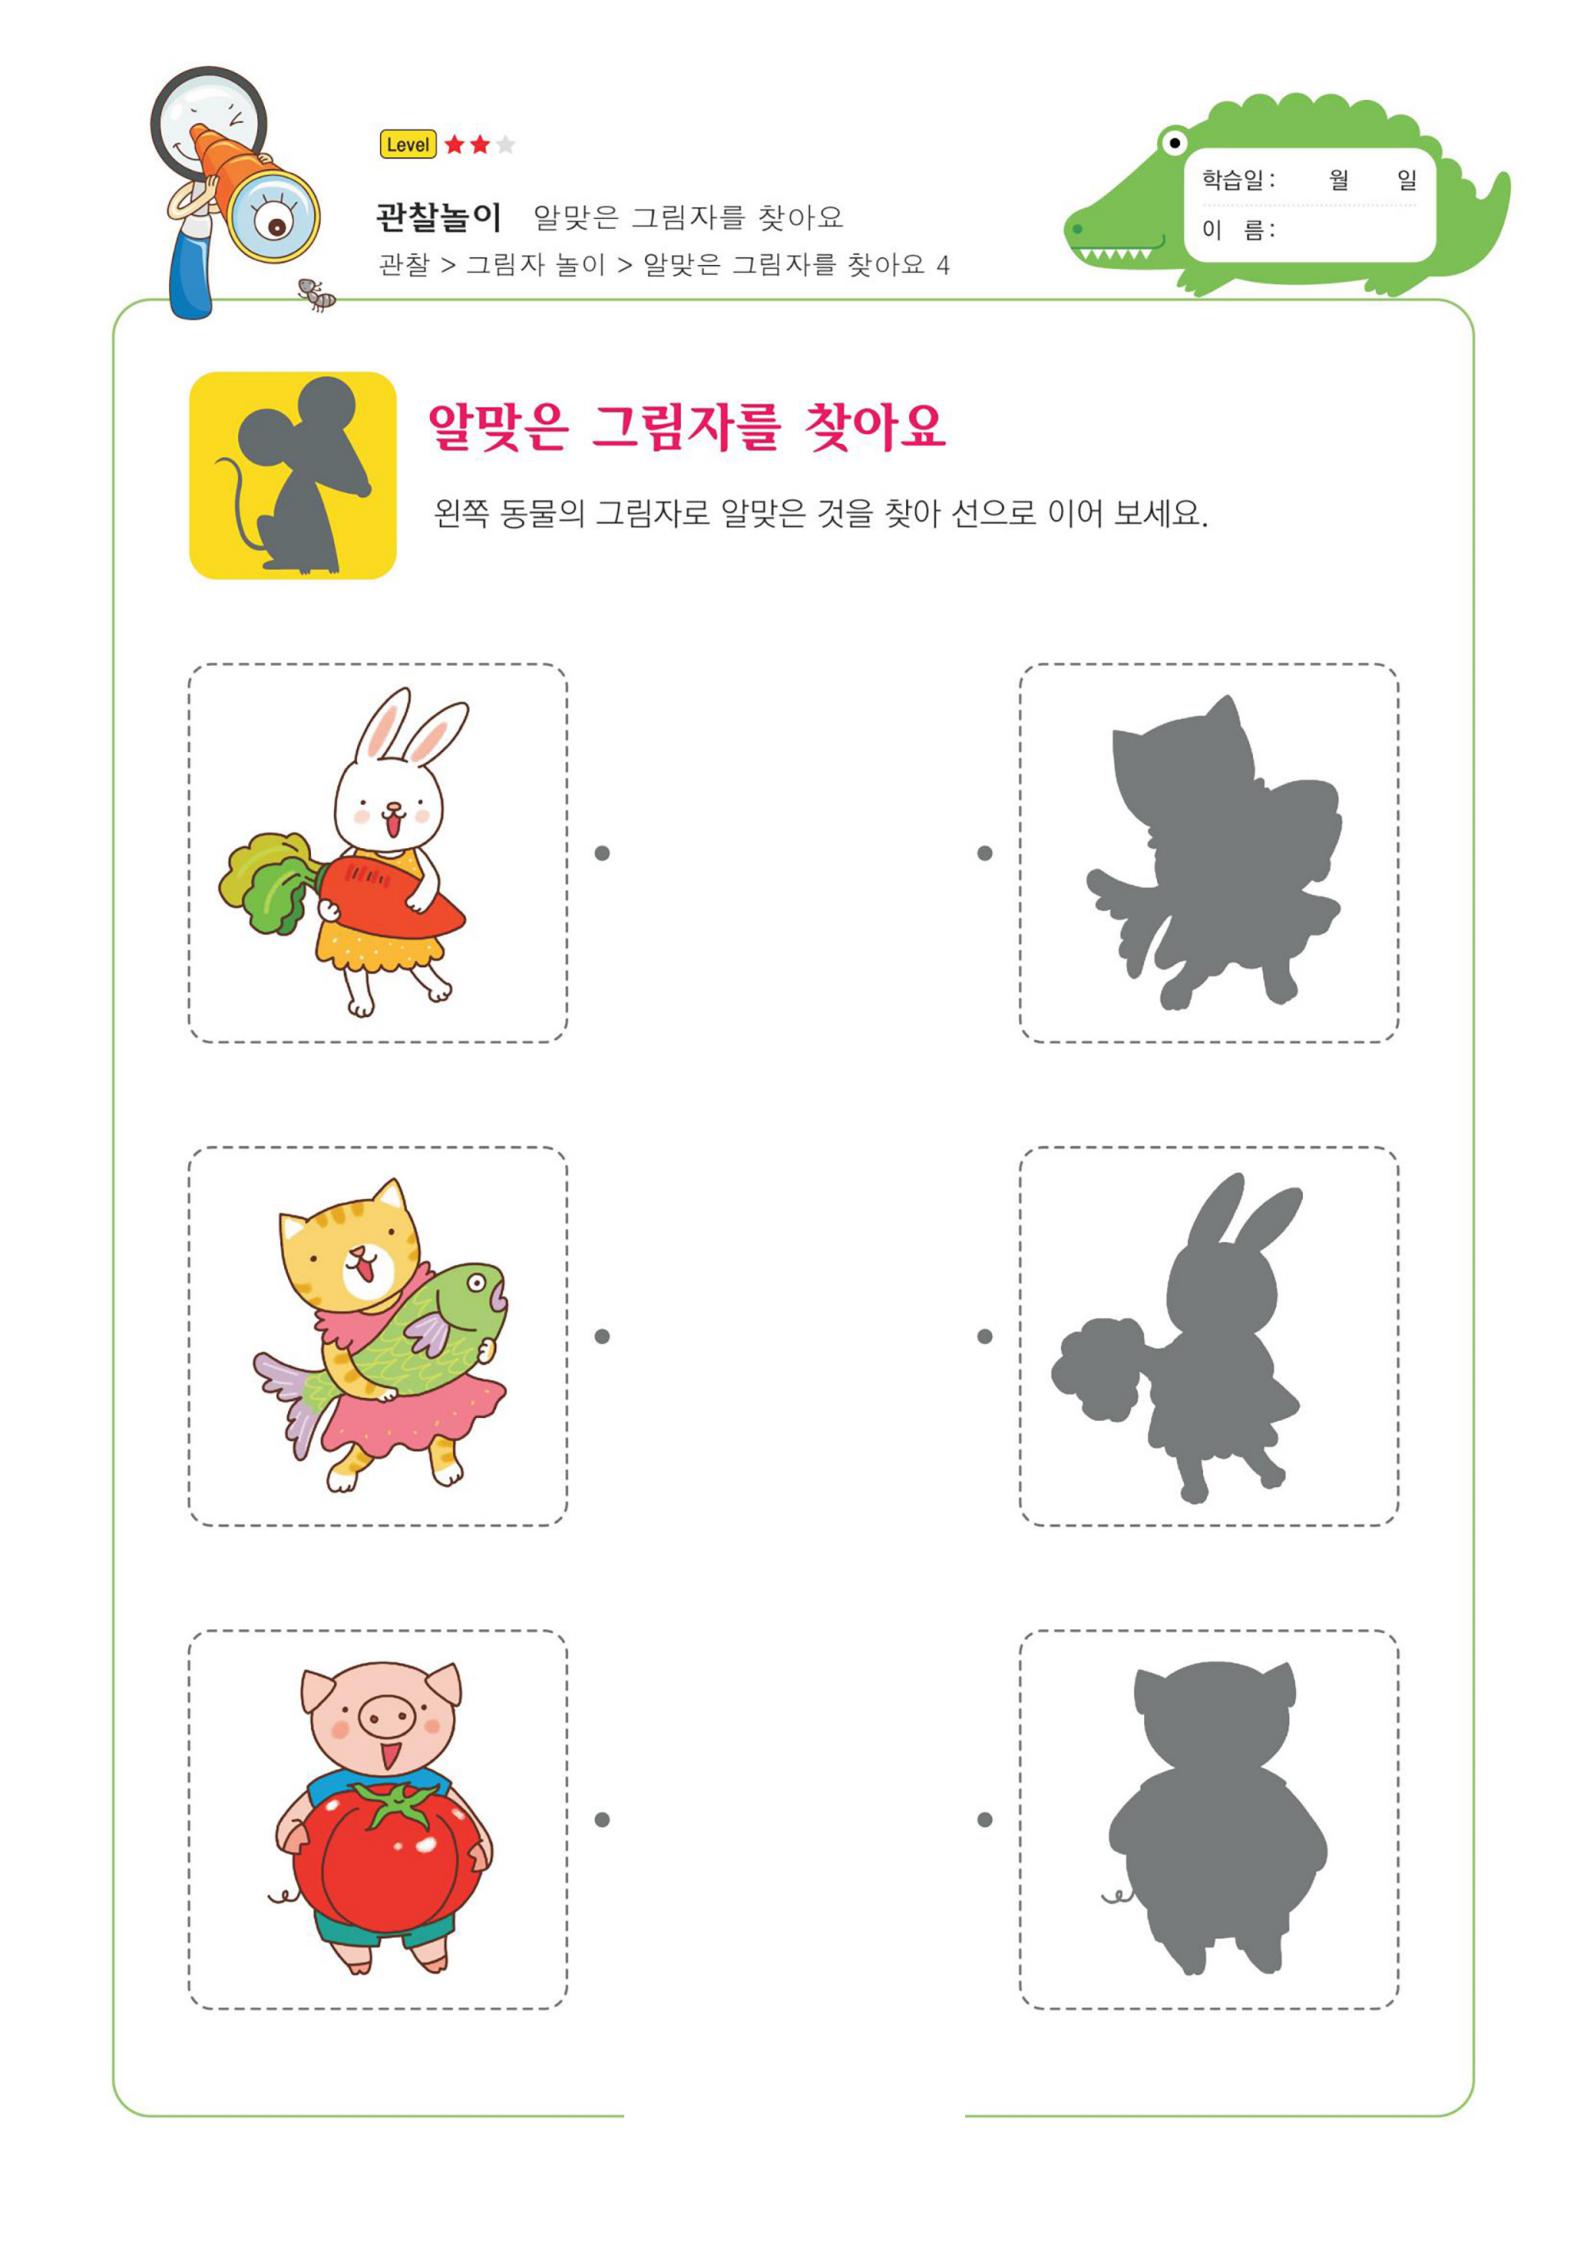 60张韩国影子配对图卡训练幼儿注意力专注力学习能力